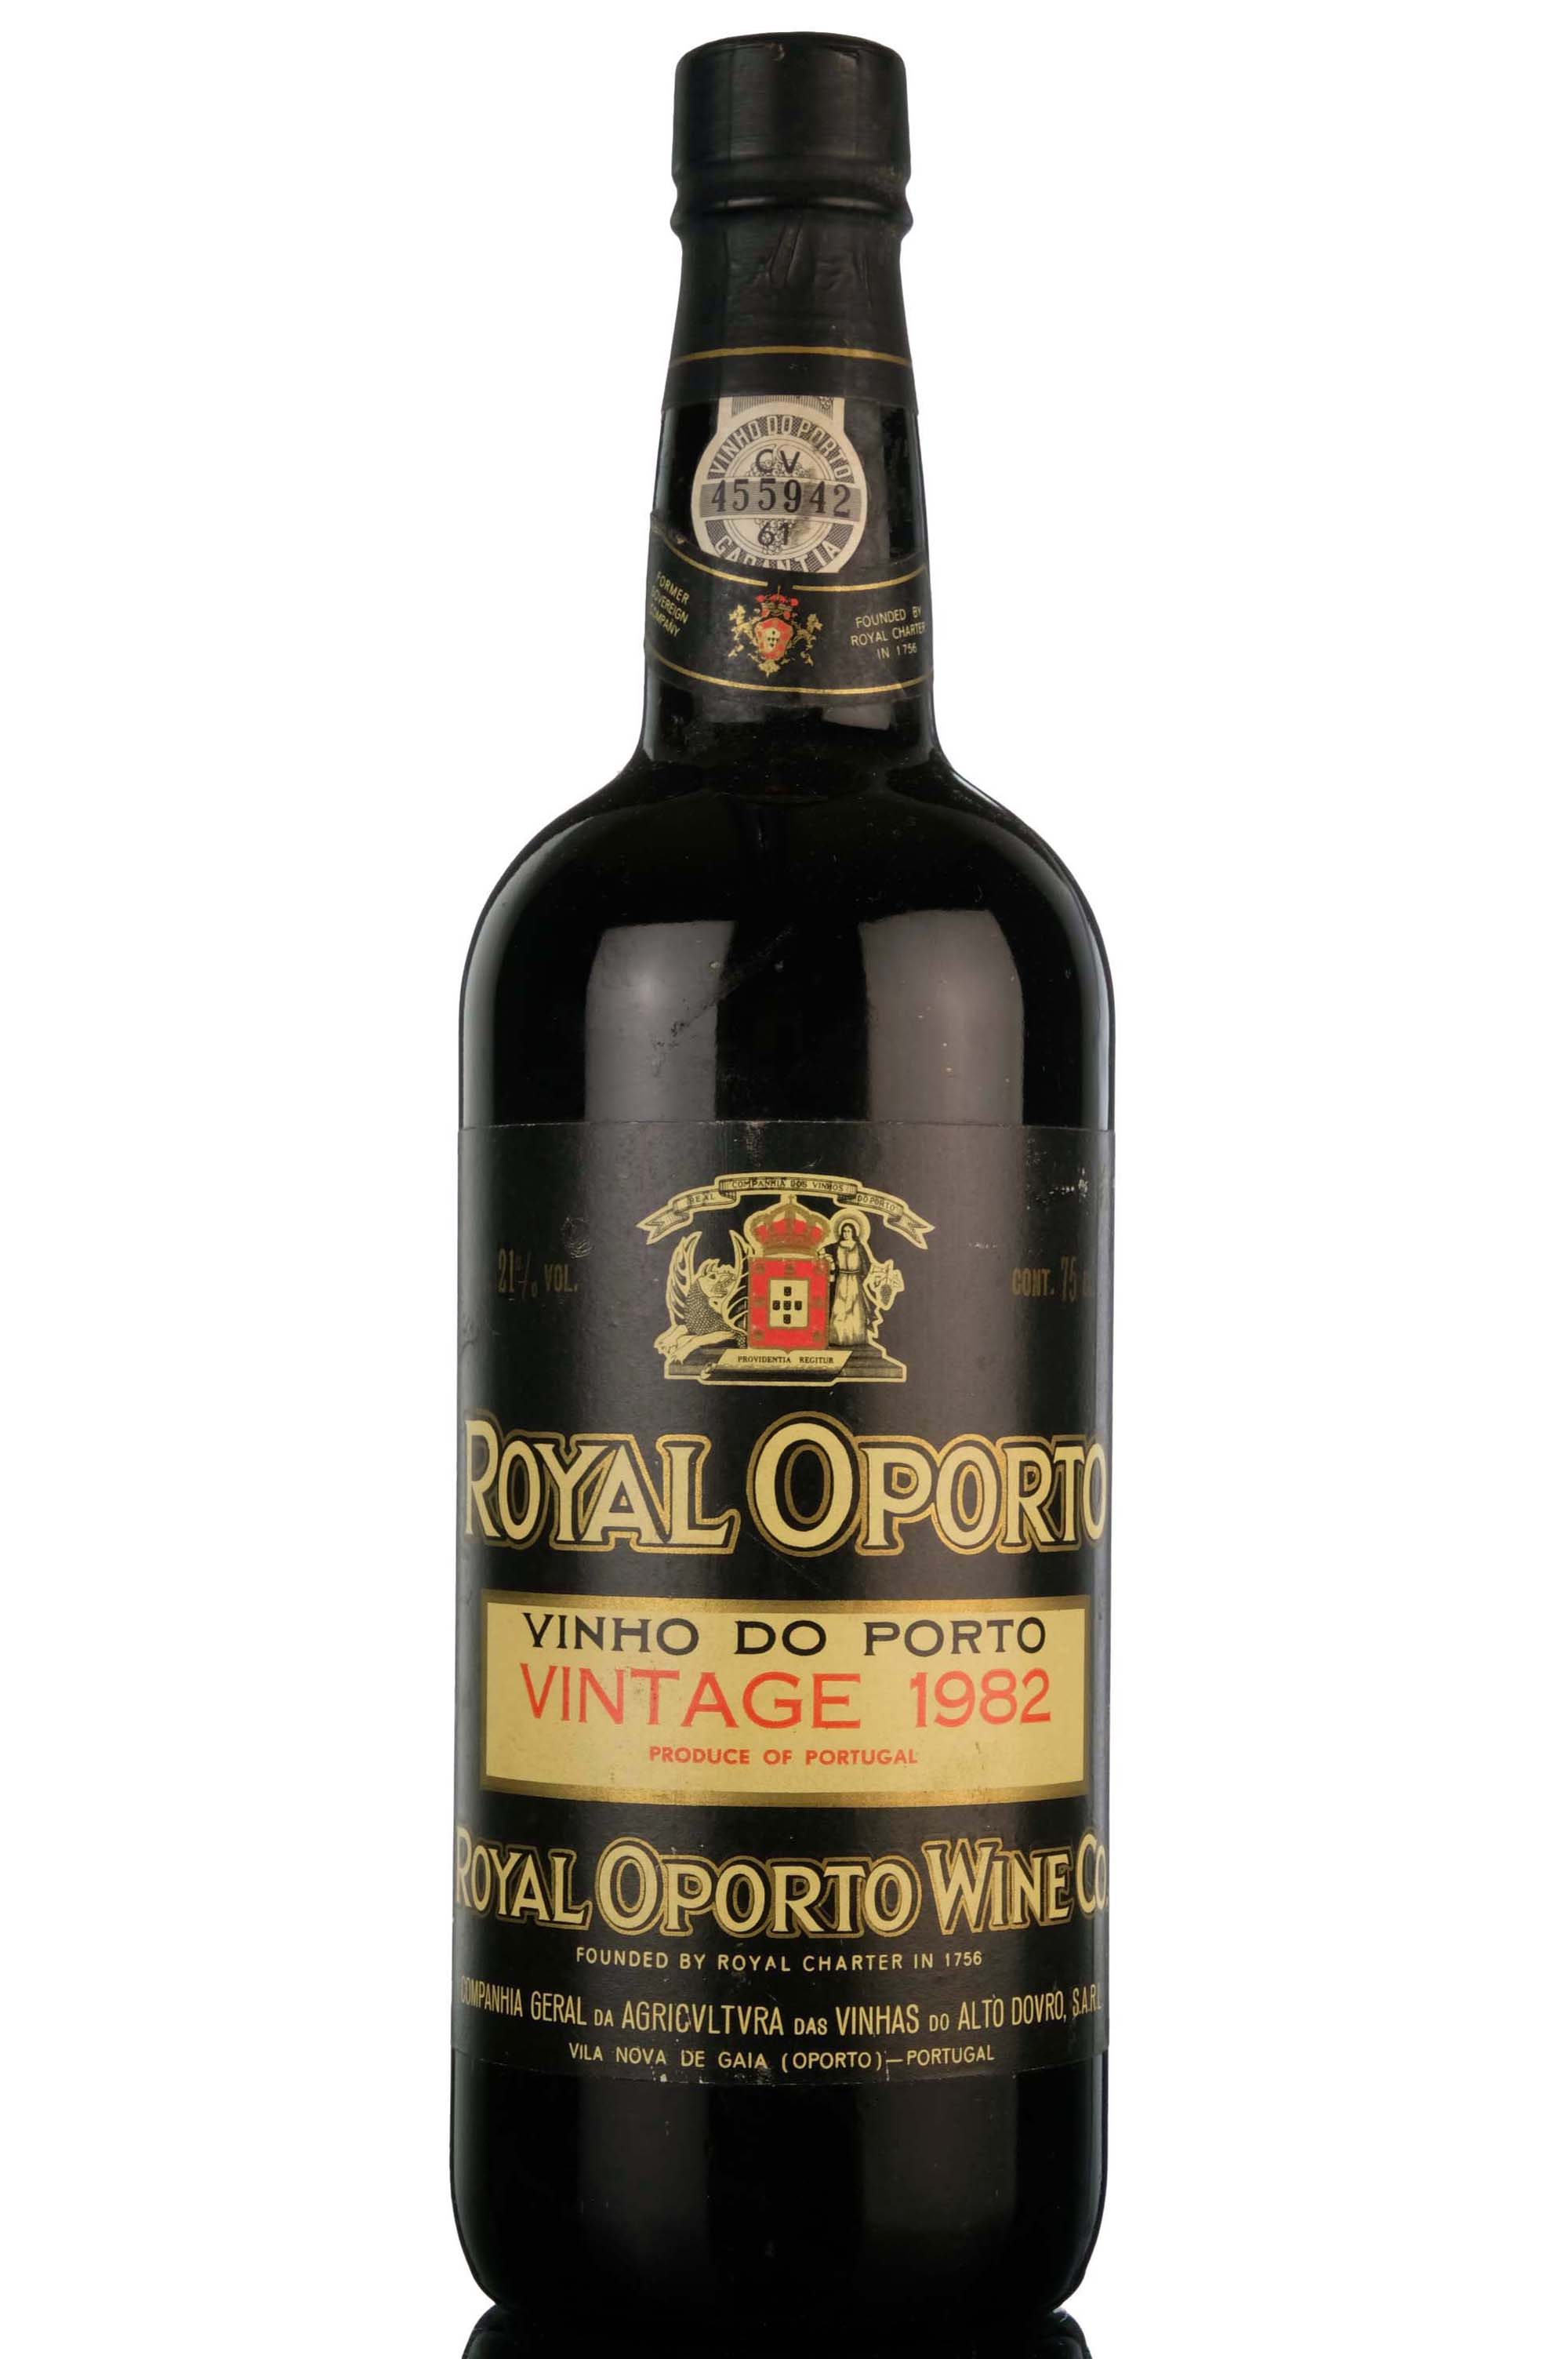 Royal Oporto 1982 Vintage Port